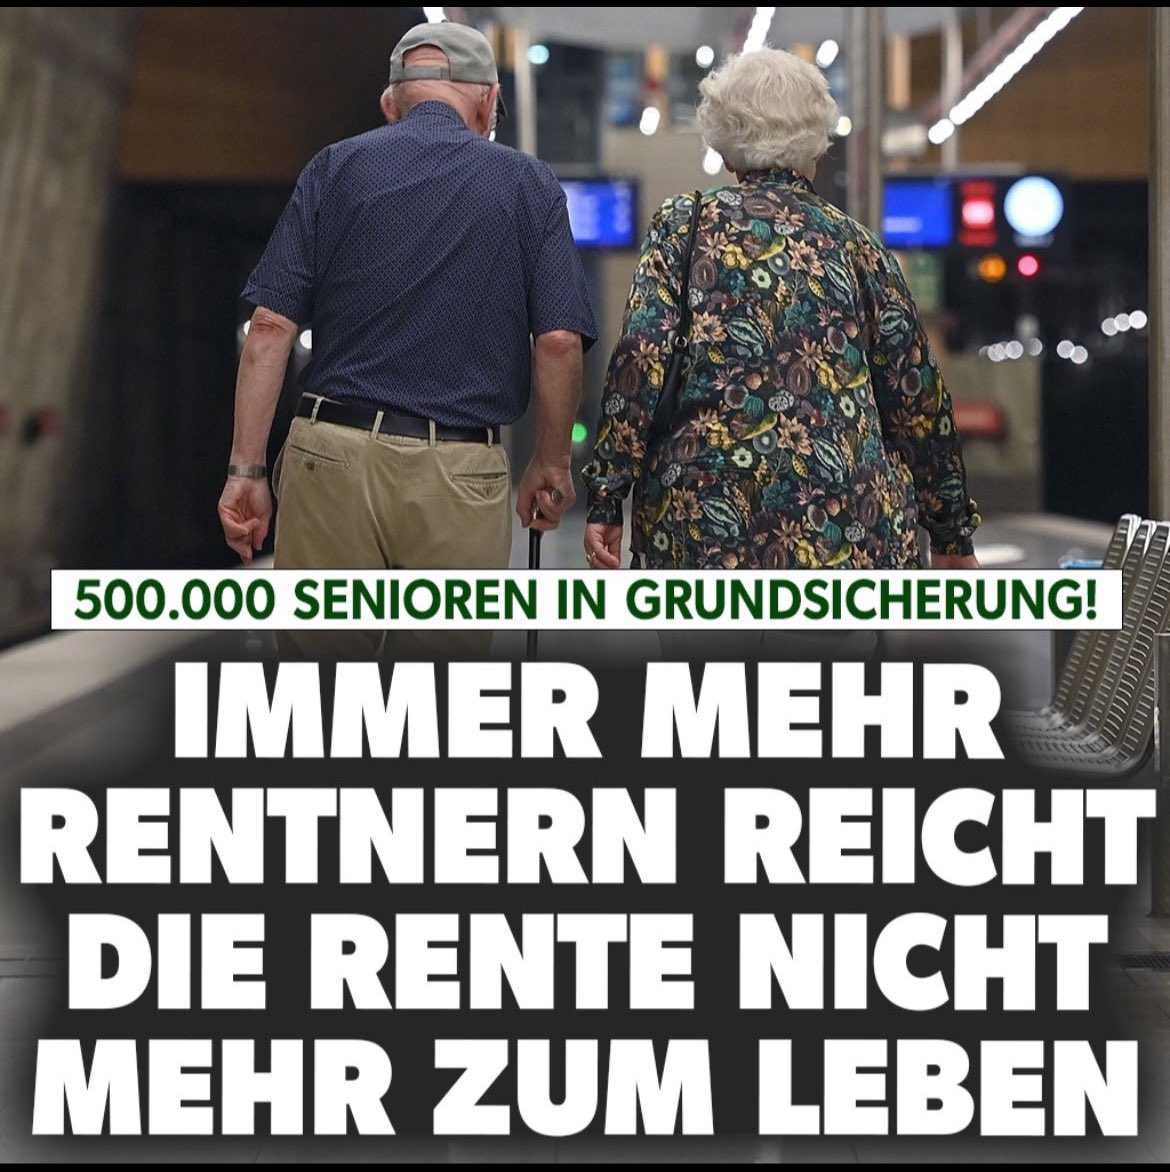 Wer sagt Cansel Kiziltepe (SPD), dass es „menschenverachtend“ ist, wenn deutsche Rentner ▪️jahrzehntelang gearbeitet und Steuern gezahlt haben, ▪️um dann eine Minirente zu erhalten und ▪️am Ende eines arbeitsreichen Lebens Flaschen sammeln müssen, um über die Runden zu kommen?